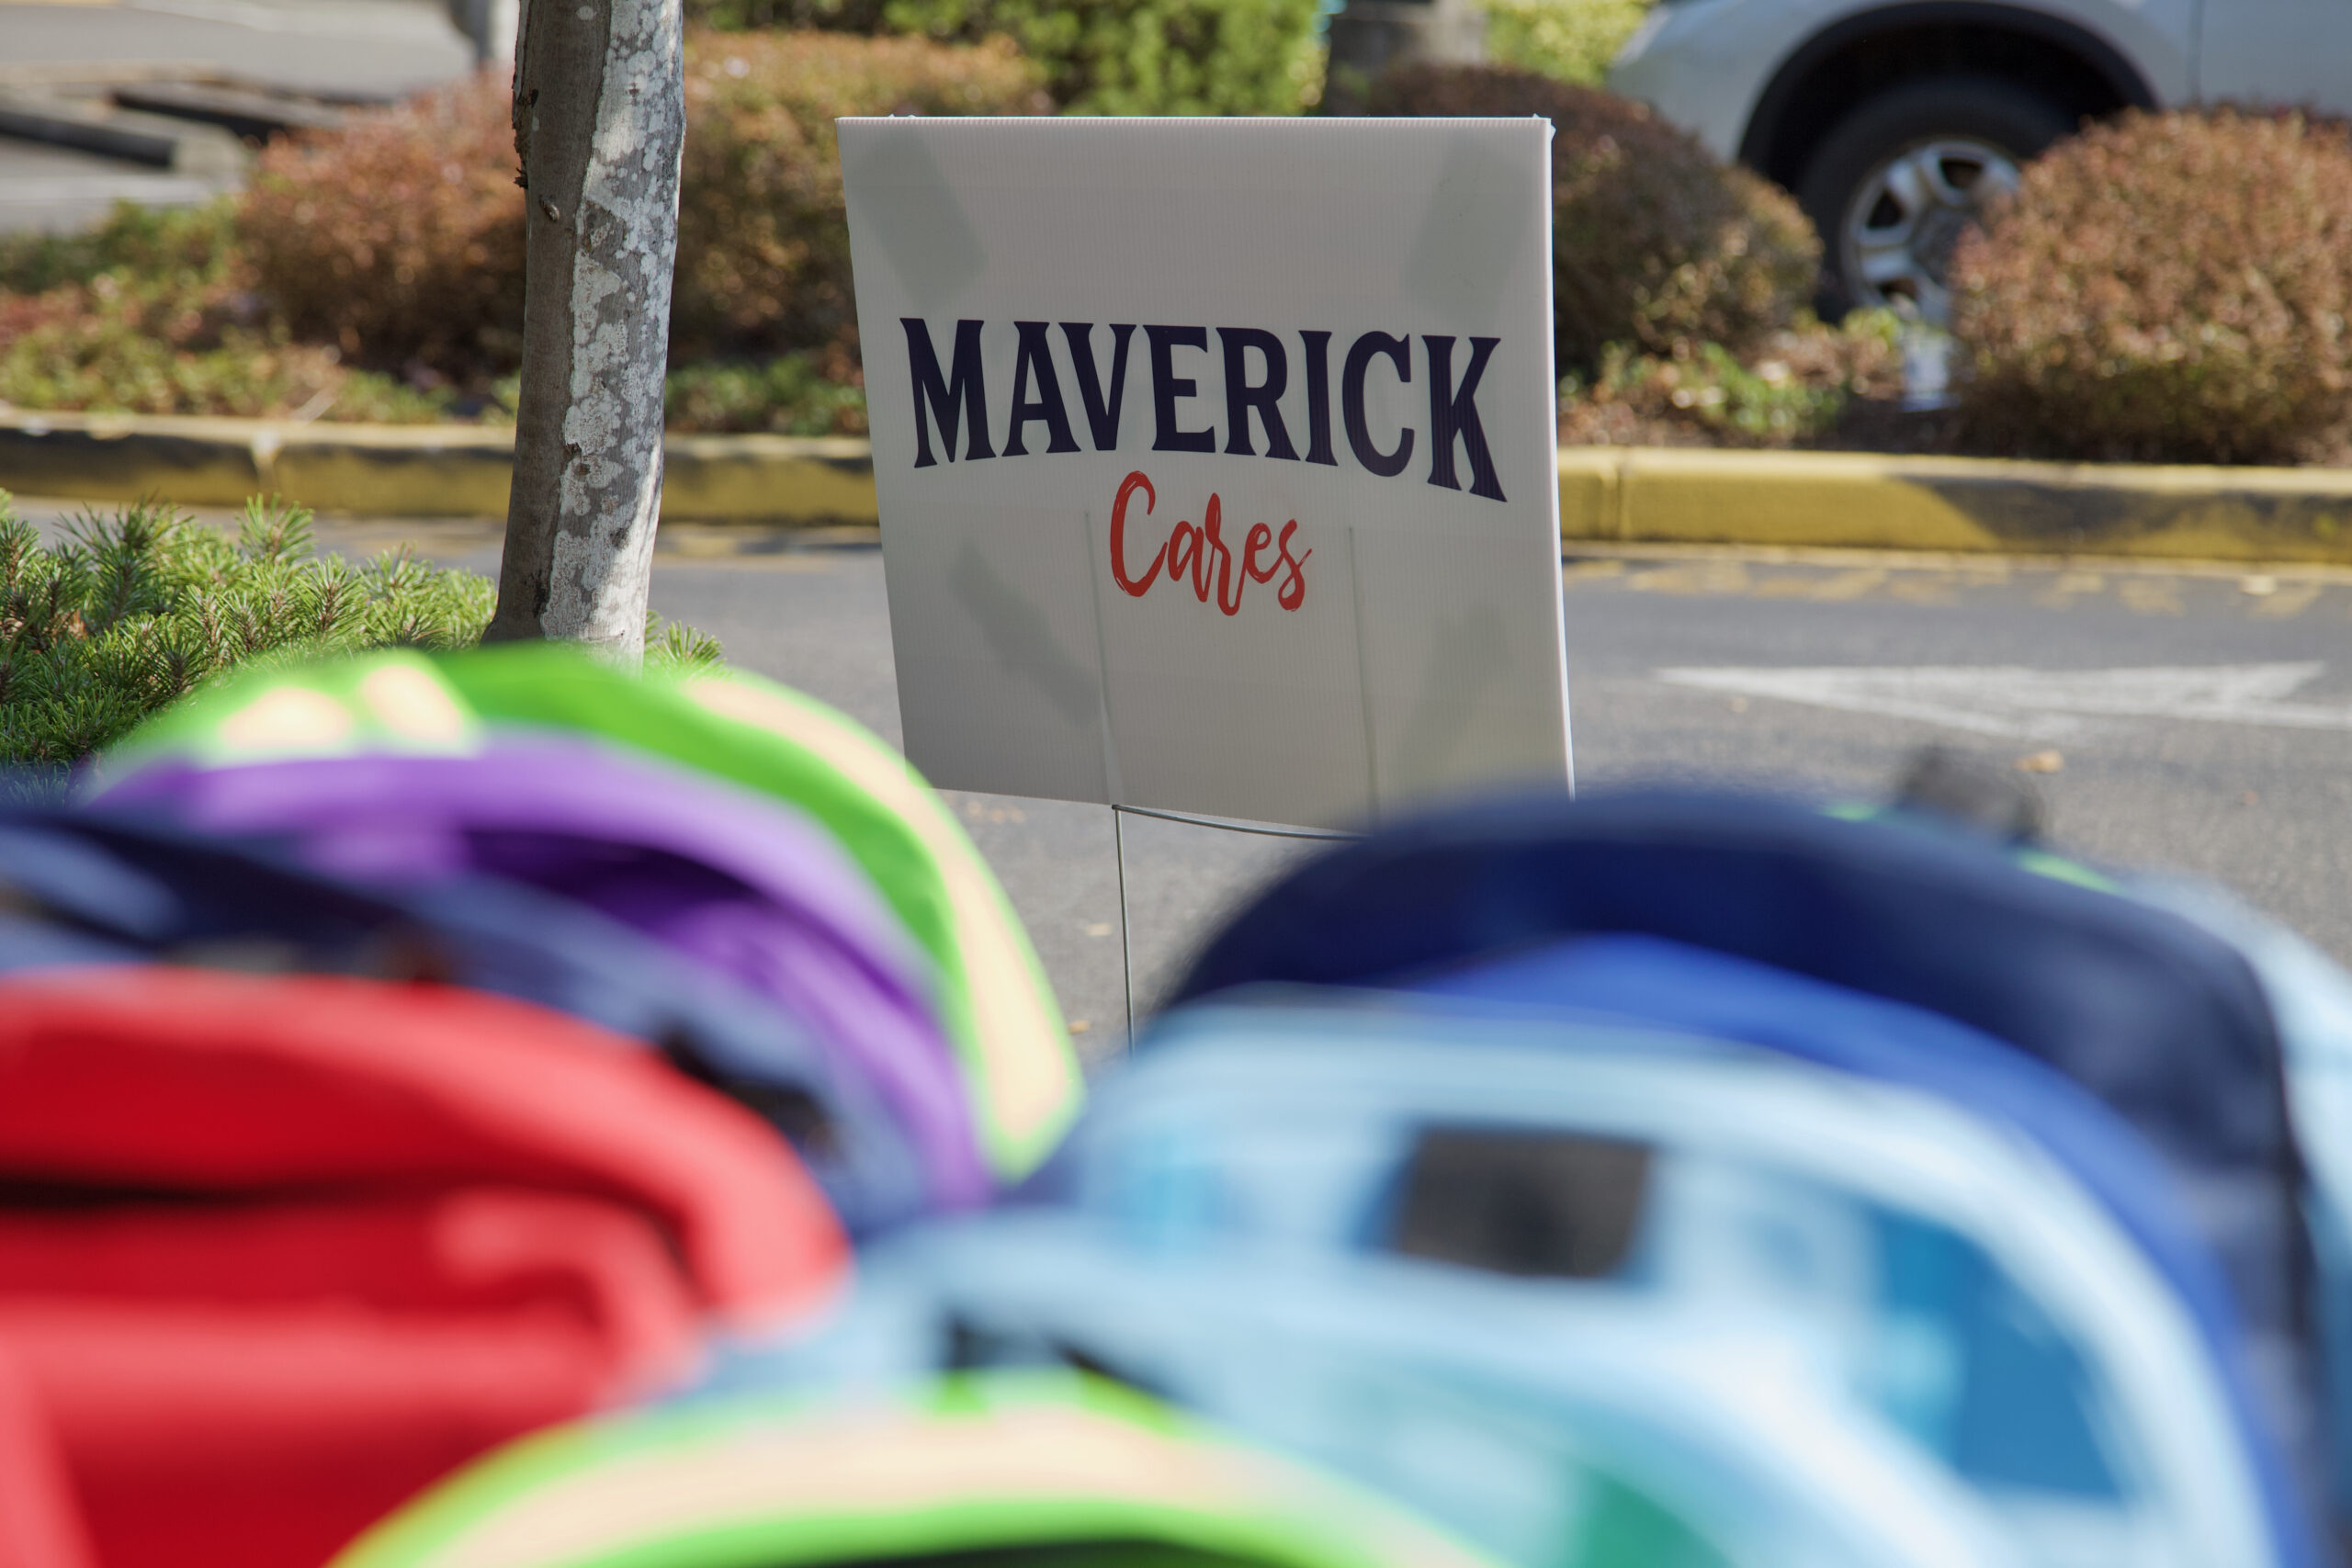 Maverick Cafes sign